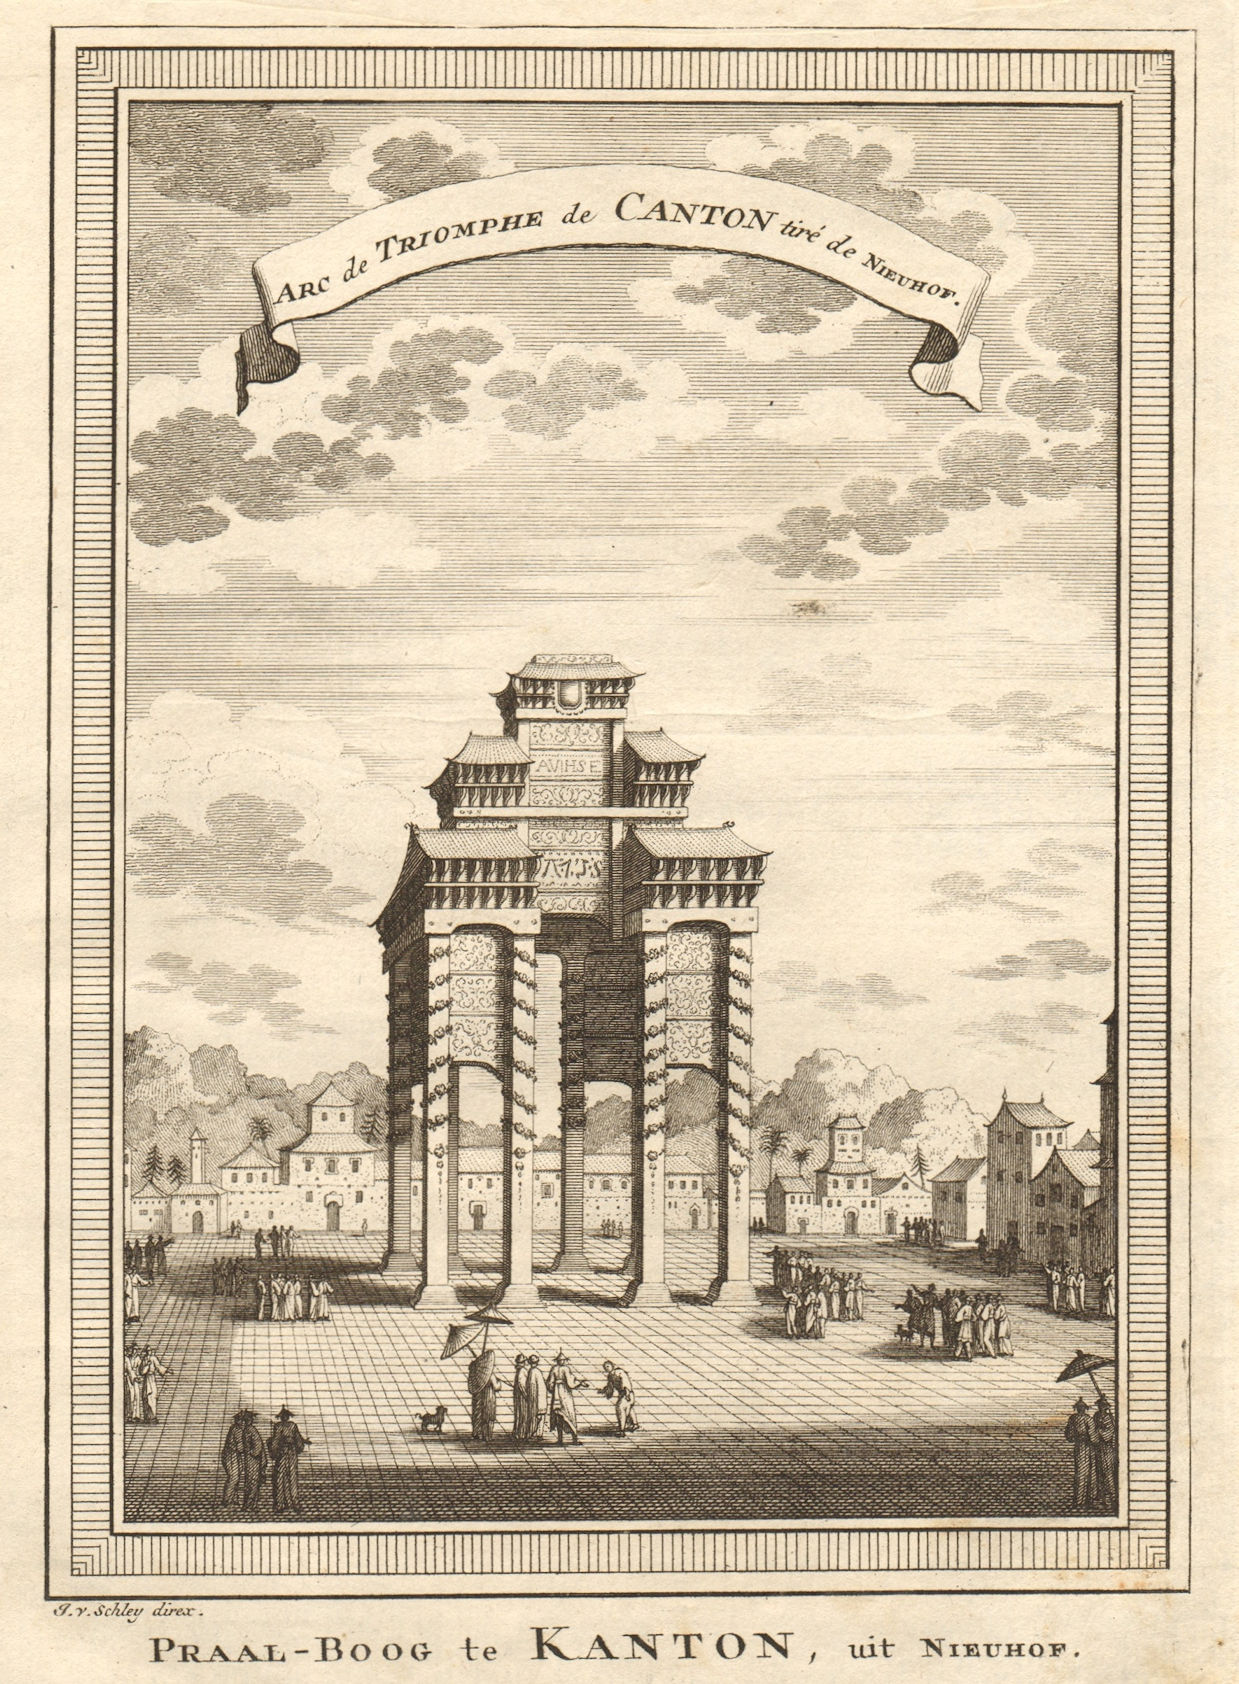 'Arc de Triomphe de Canton'. A Triumphal Arch At Guangzhou, China. SCHLEY 1749